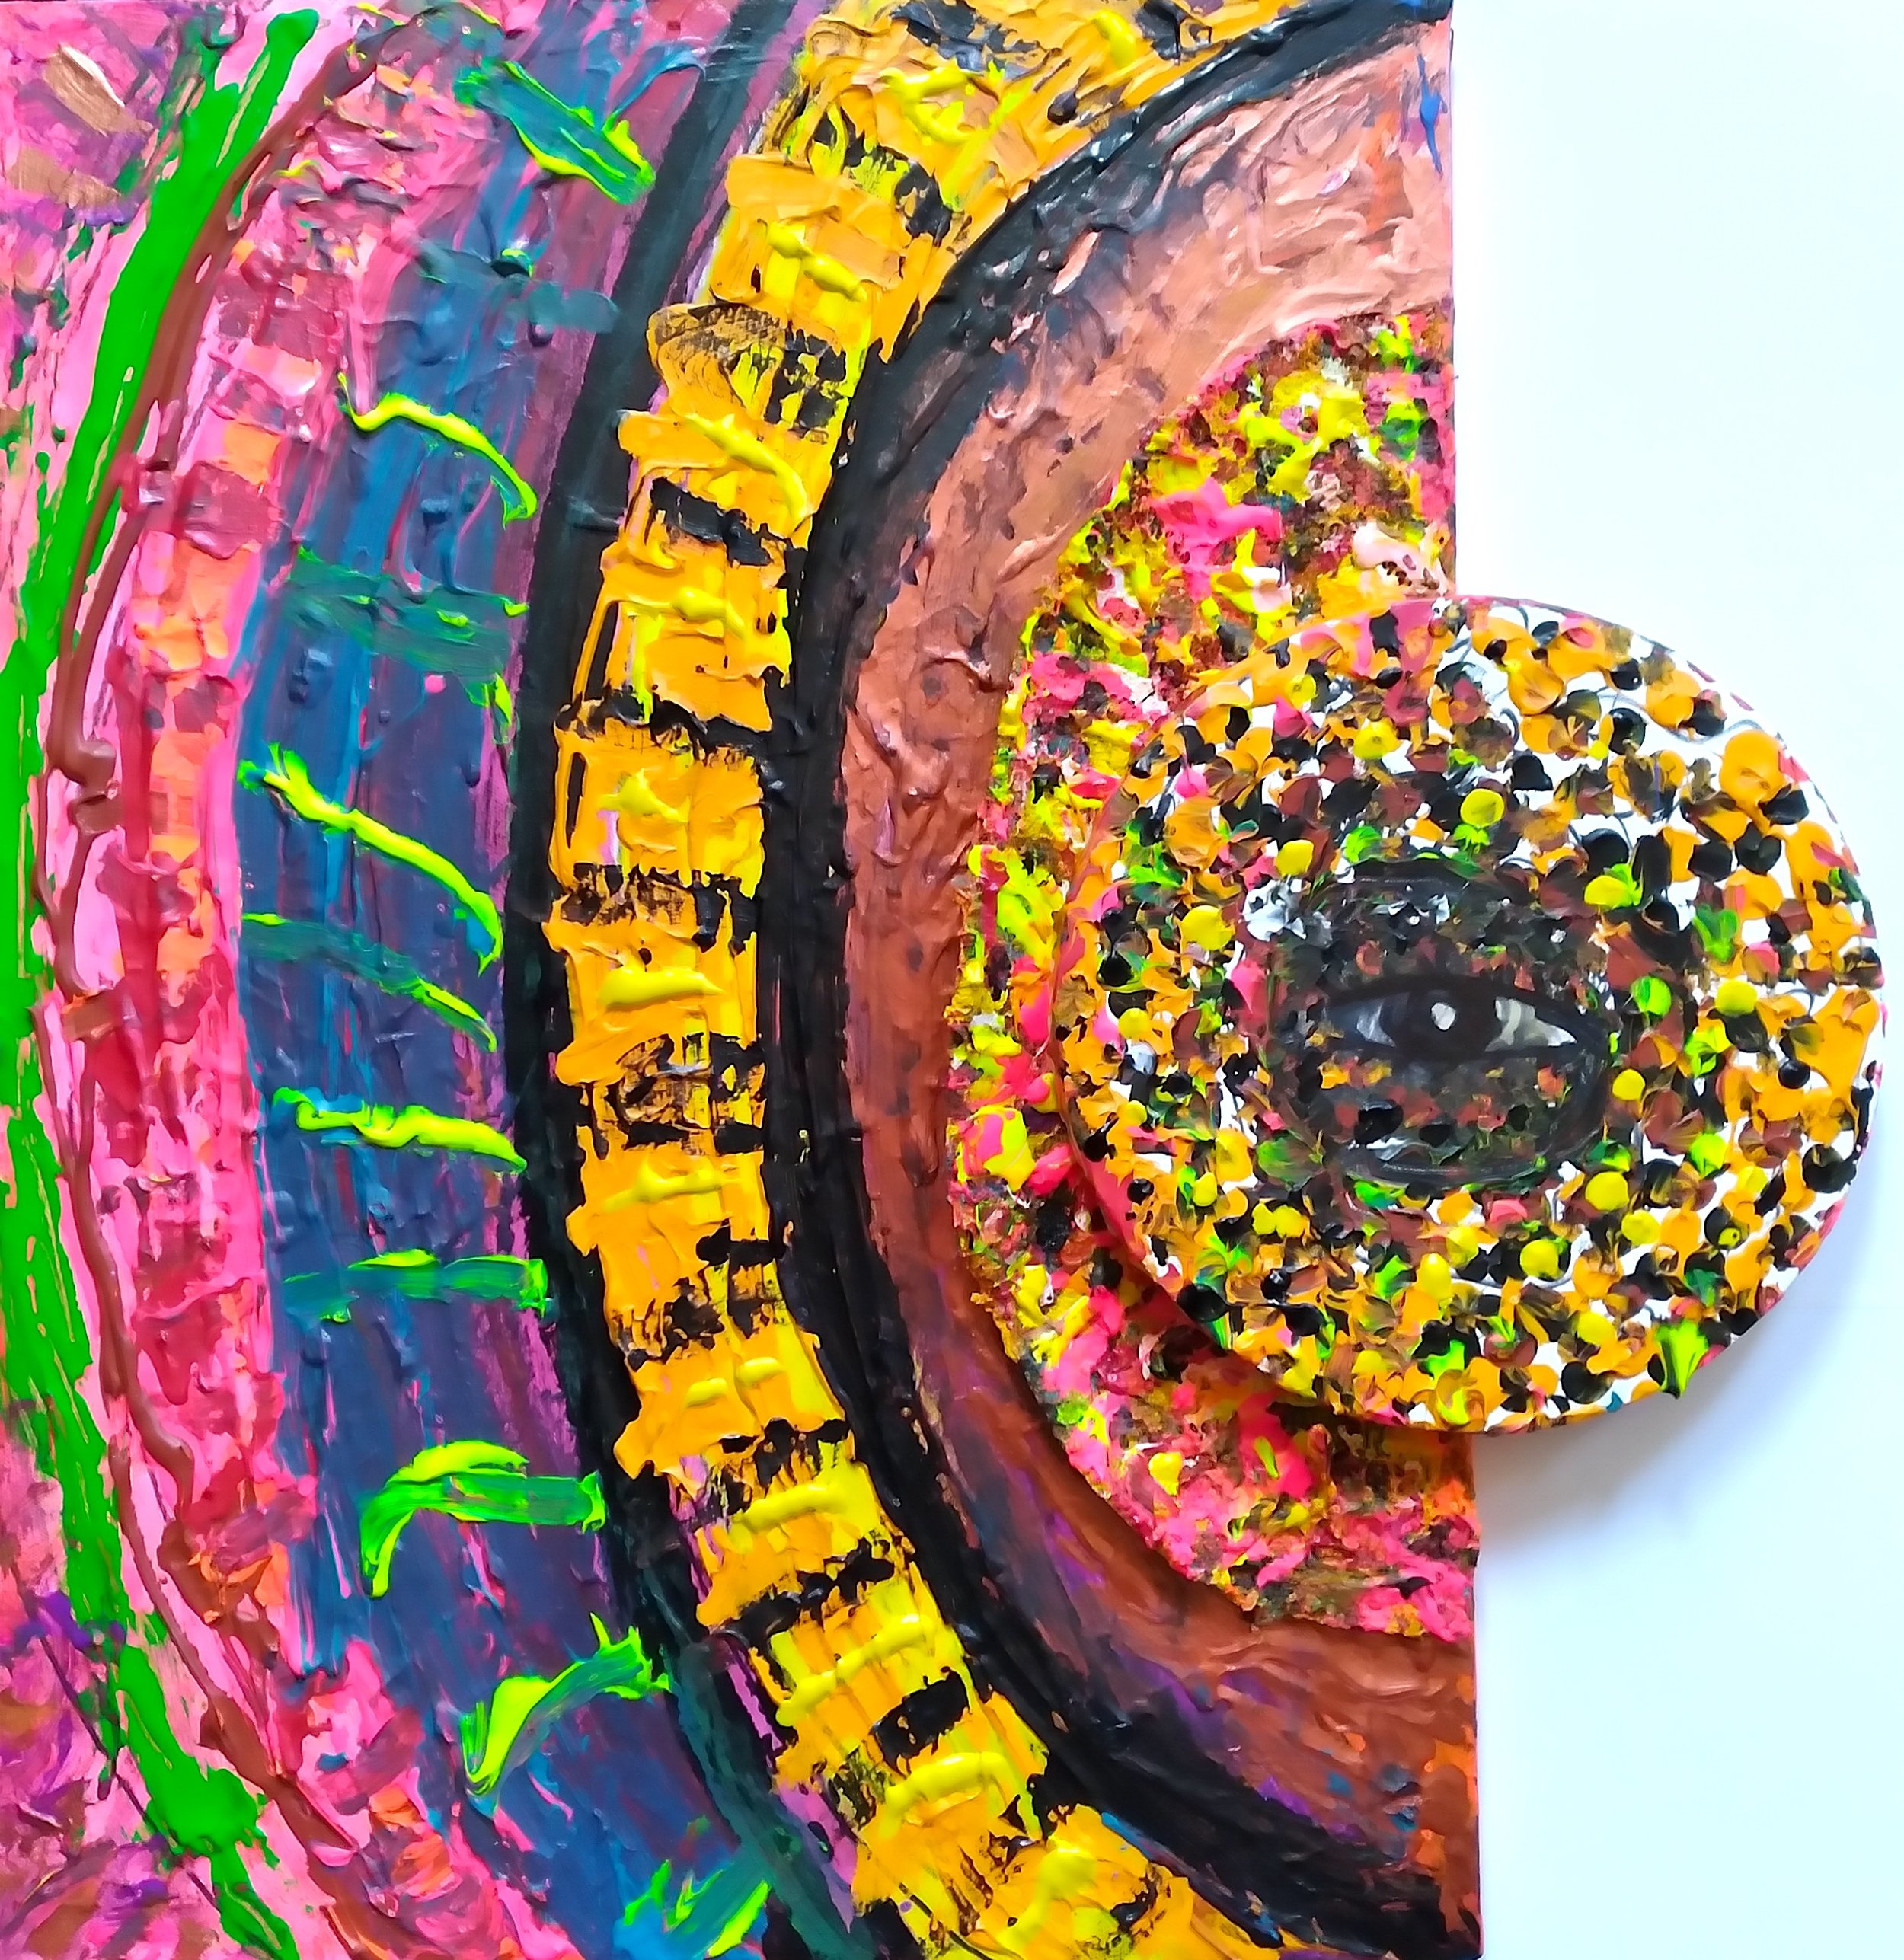 Sunflower, 2009. Oil, acrylic on canvas. 24” x 18”.